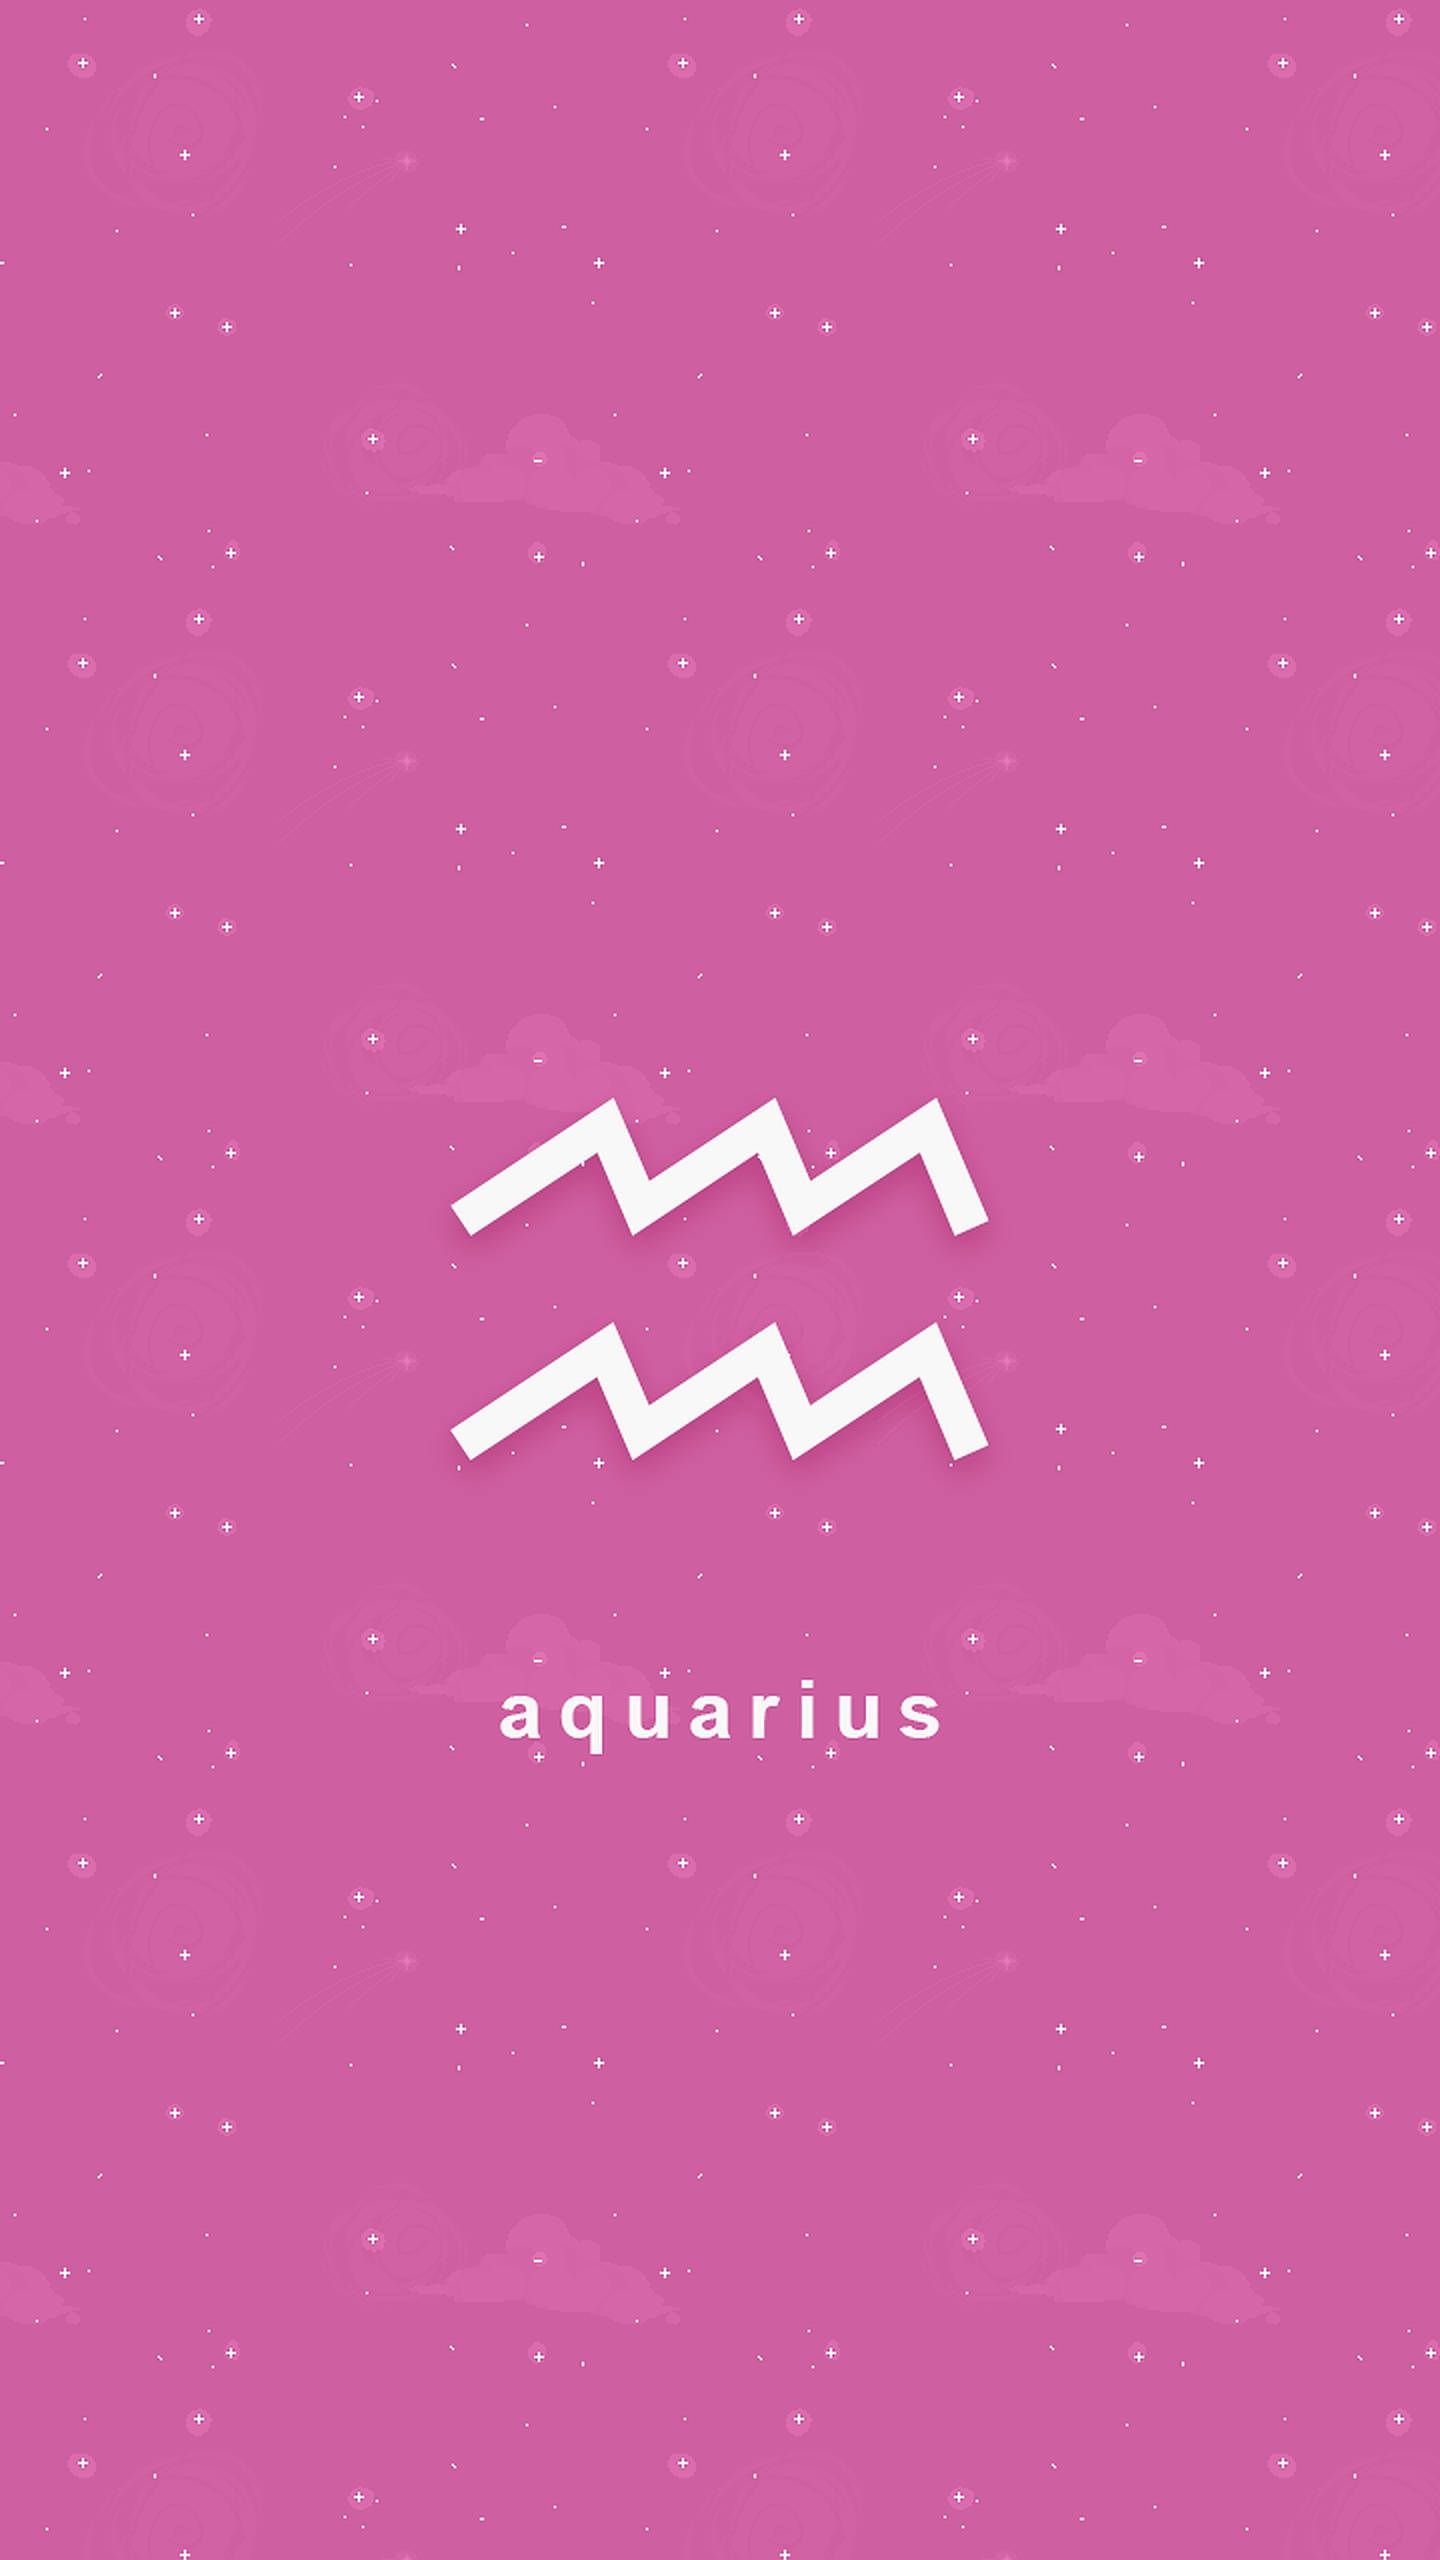 The aquarius logo on a pink background - Aquarius